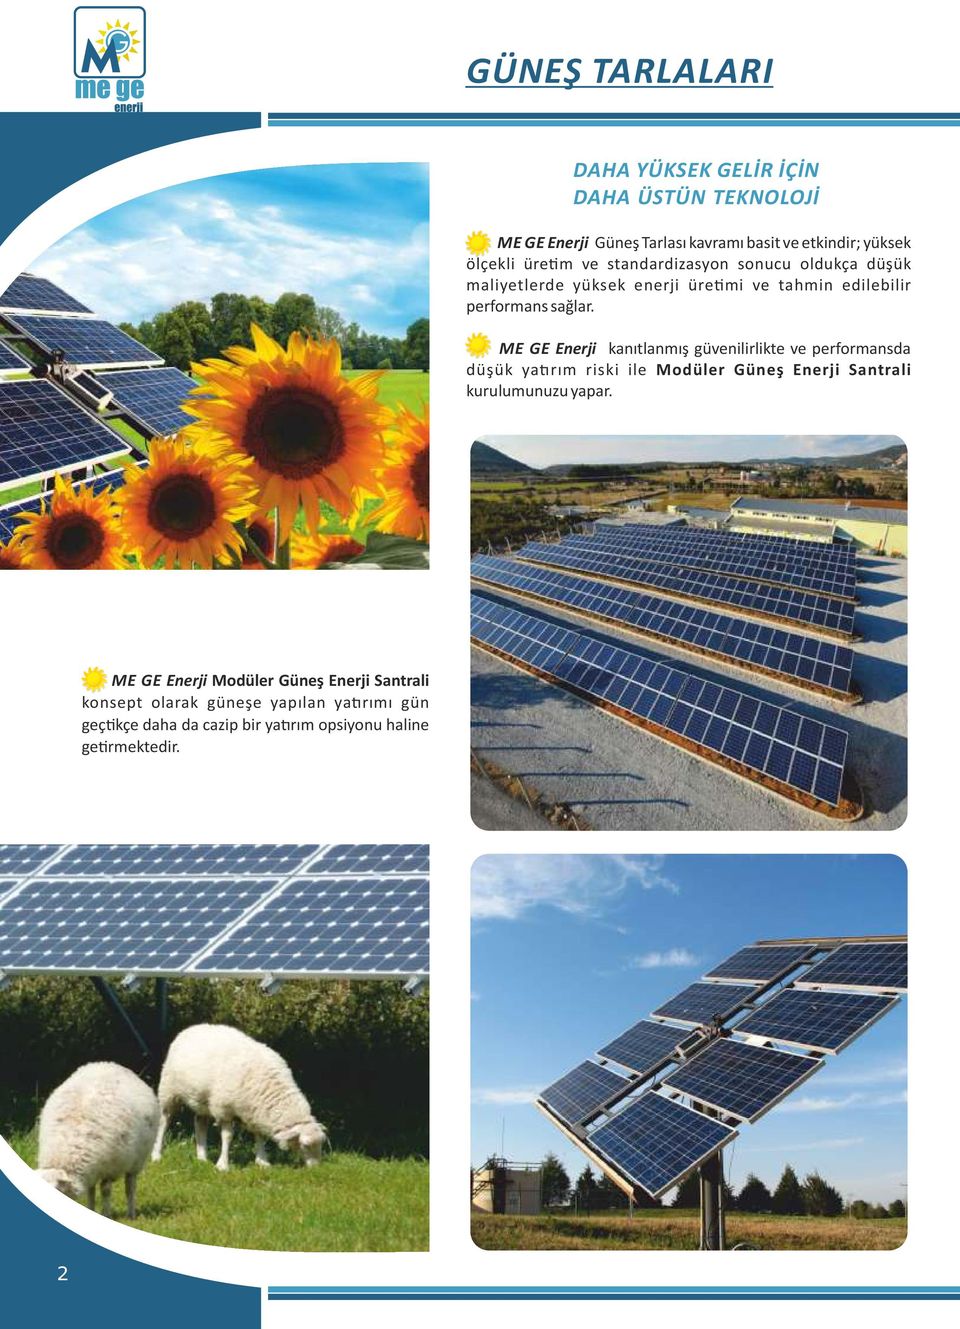 ME GE Enerji kanıtlanmış güvenilirlikte ve performansda düşük ya rım riski ile Modüler Güneş Enerji Santrali kurulumunuzu yapar.